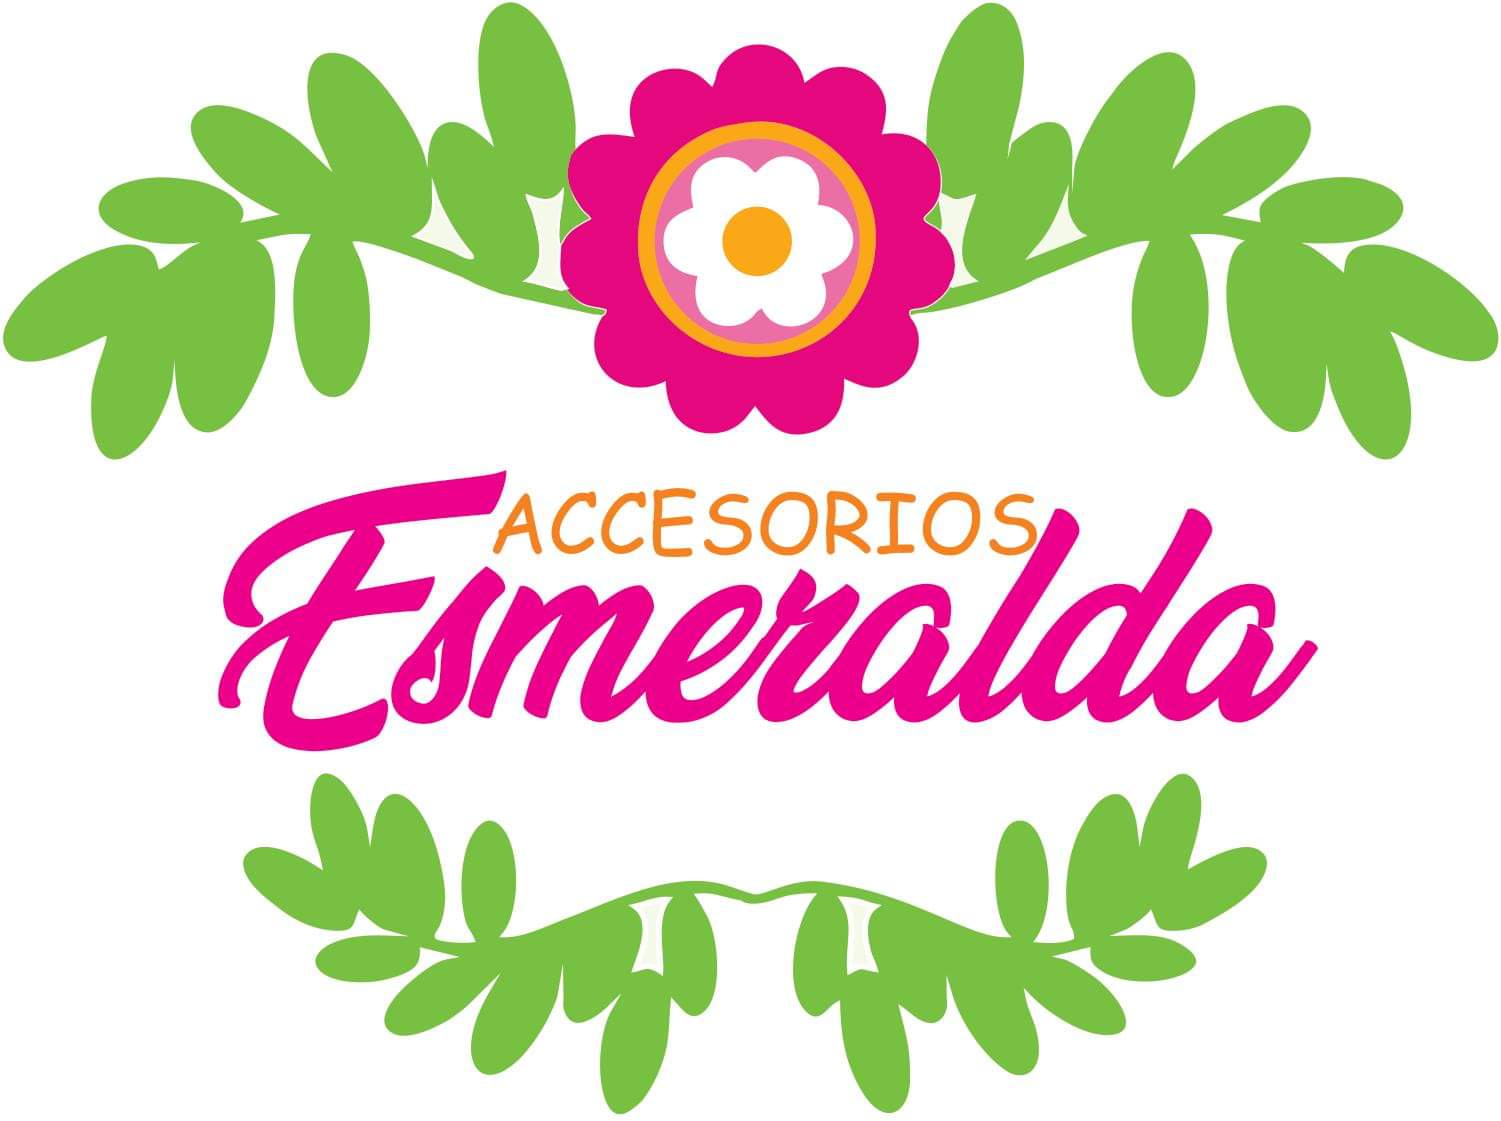 Accesorios Esmeralda